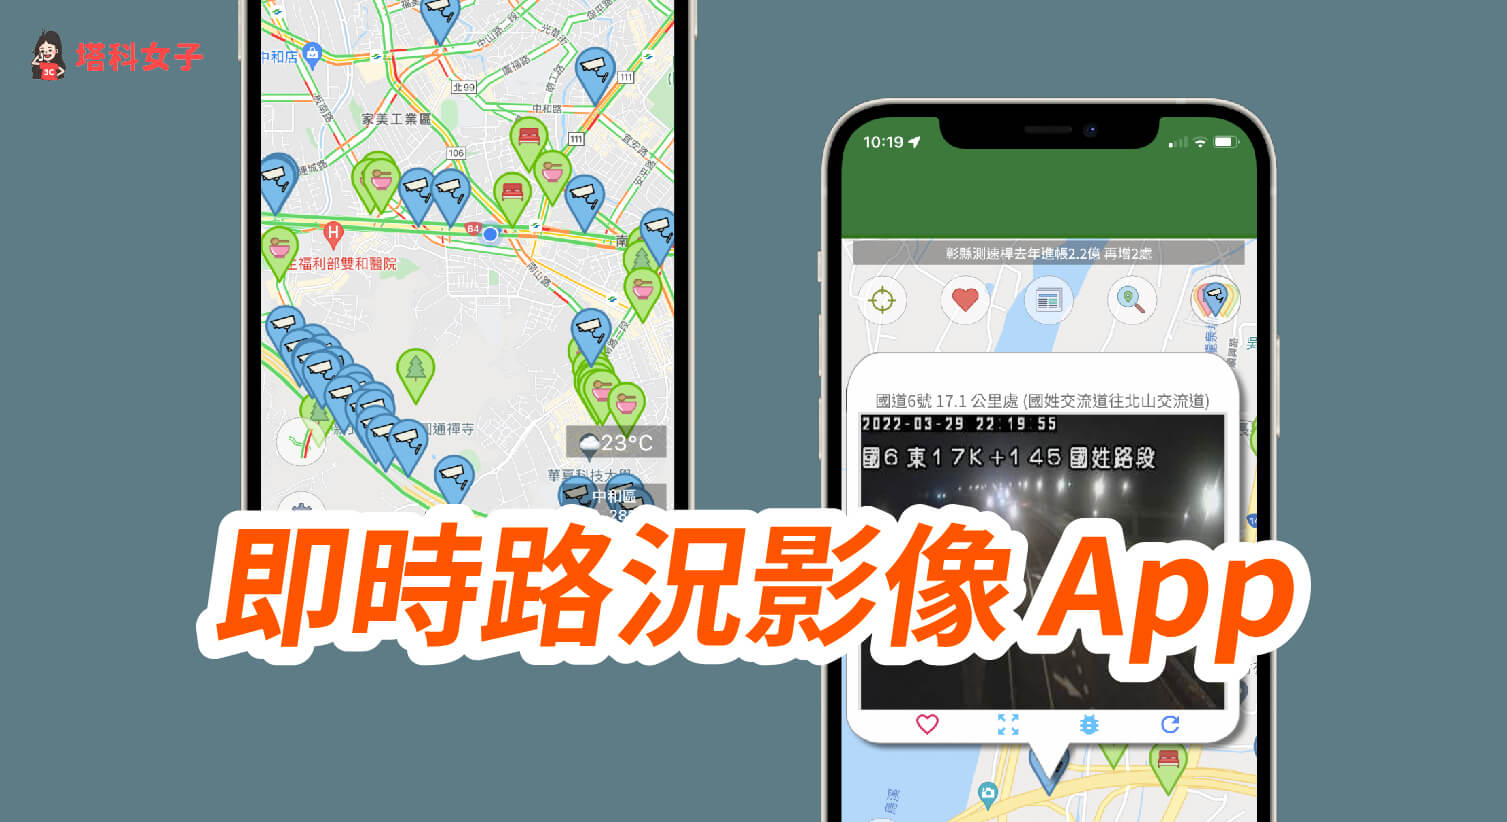 即時路況影像App 可查看國道路況、景點車流、區間測速 (iOS/Android)